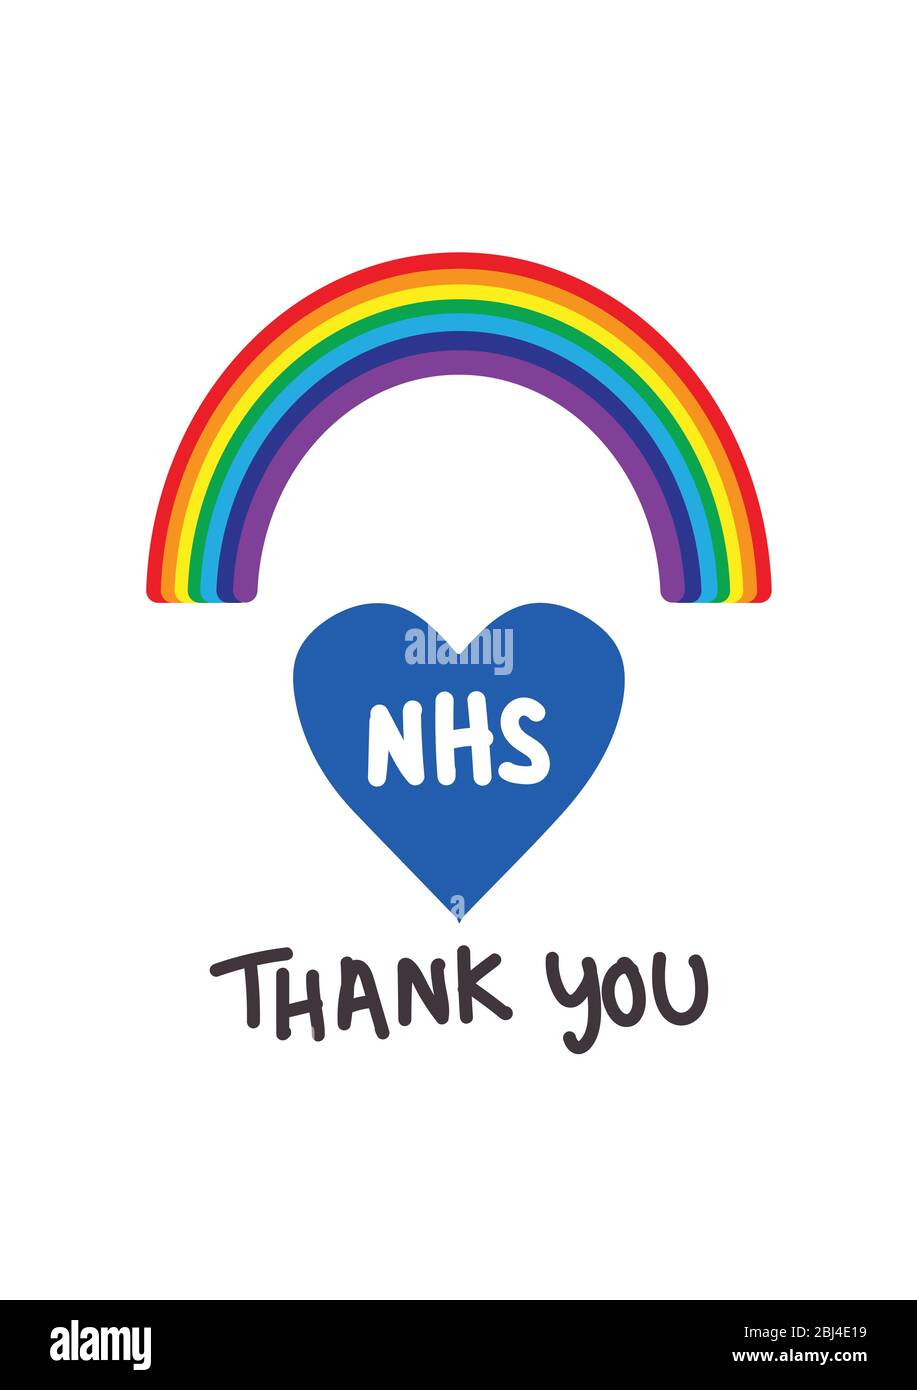 Merci NHS Rainbow Vector au cours de la pandémie de coronavirus de 2020 Illustration de Vecteur